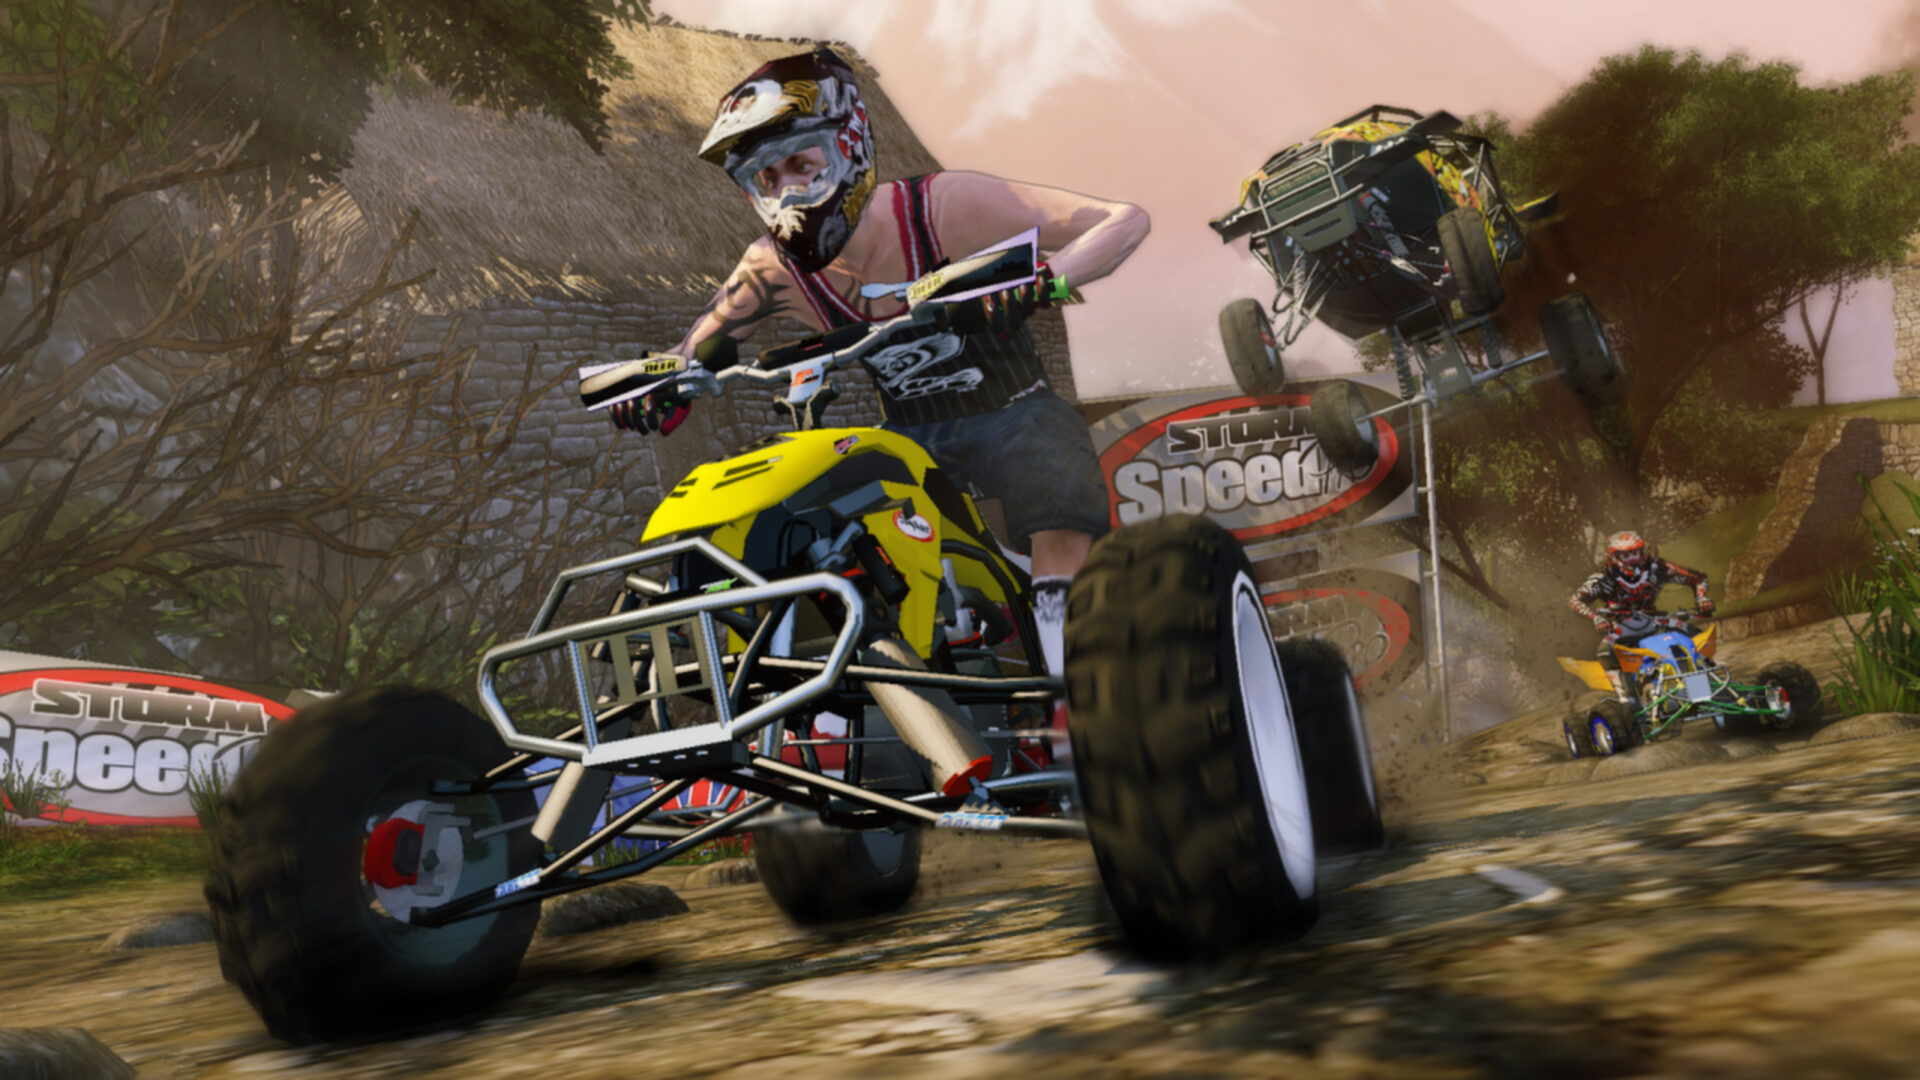 Mad Riders (Xbox 360) Full HD - 1080 